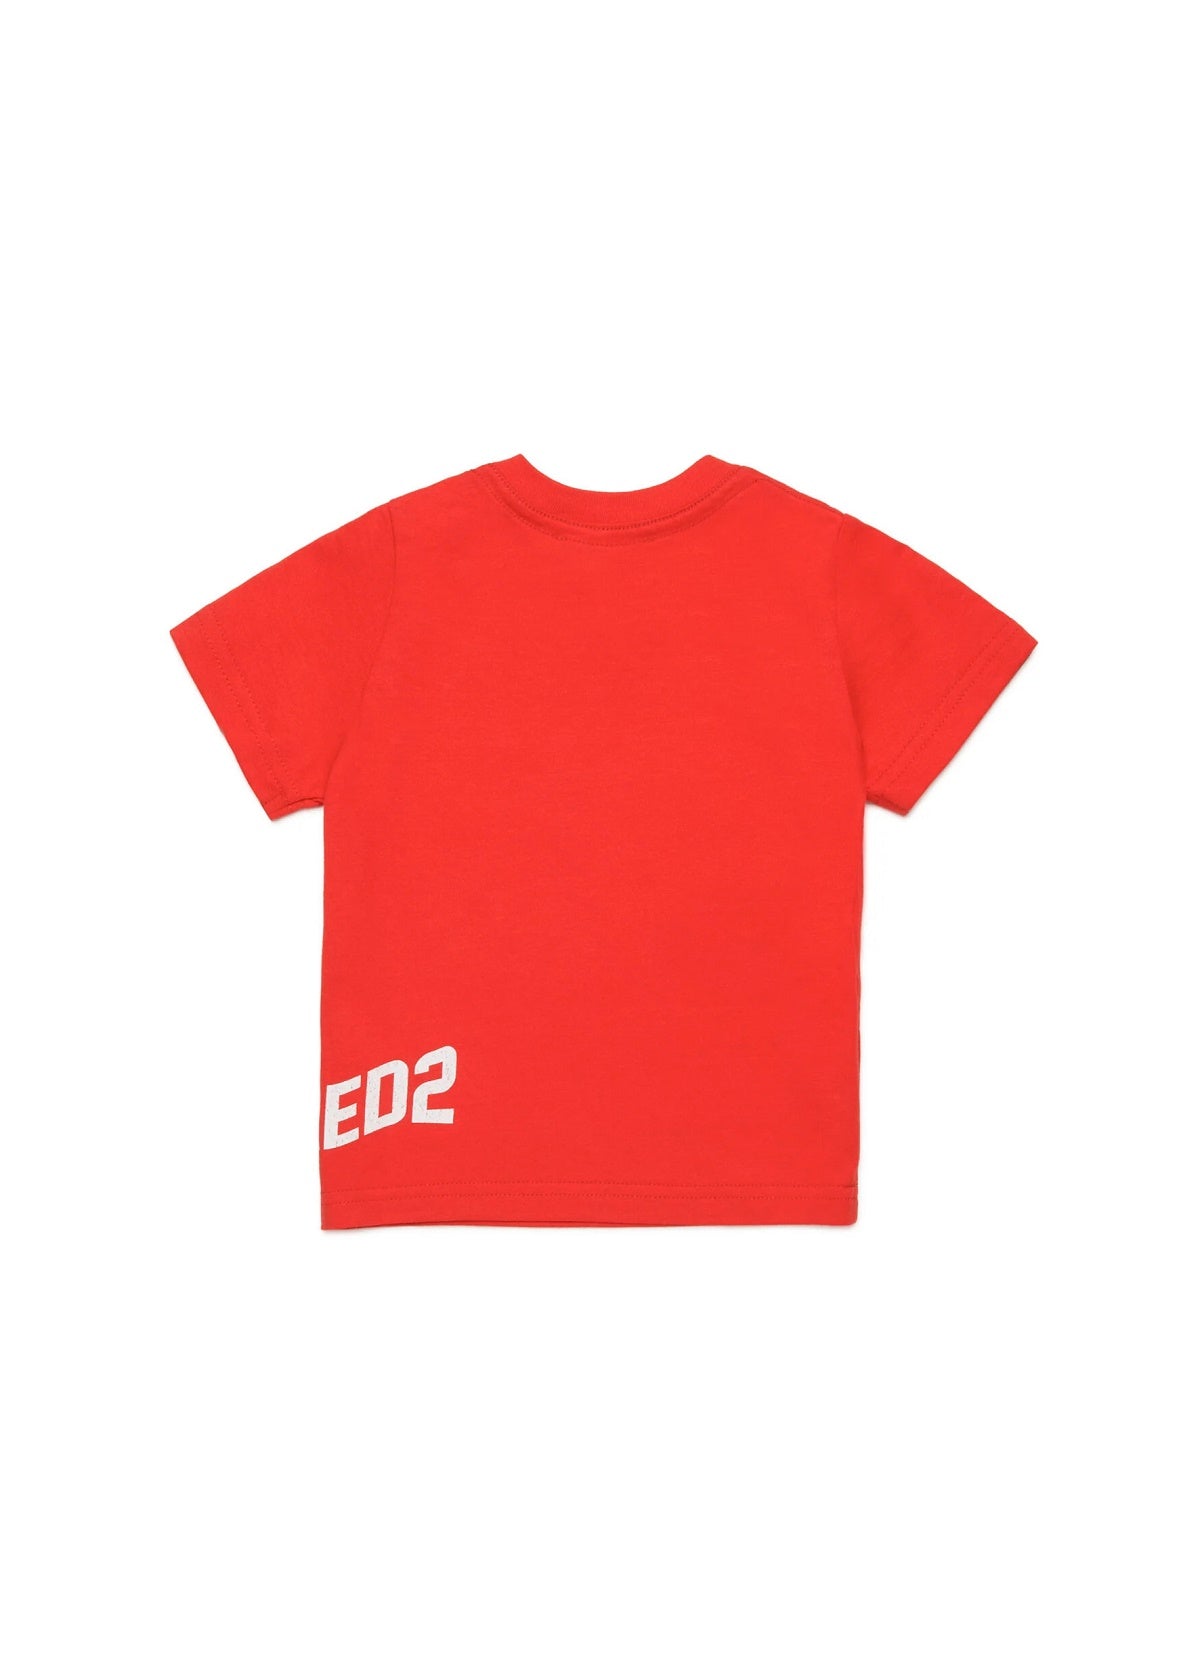 Dsquared2 Kids T-shirt Rossa con Logo Effetto Wave per Neonati